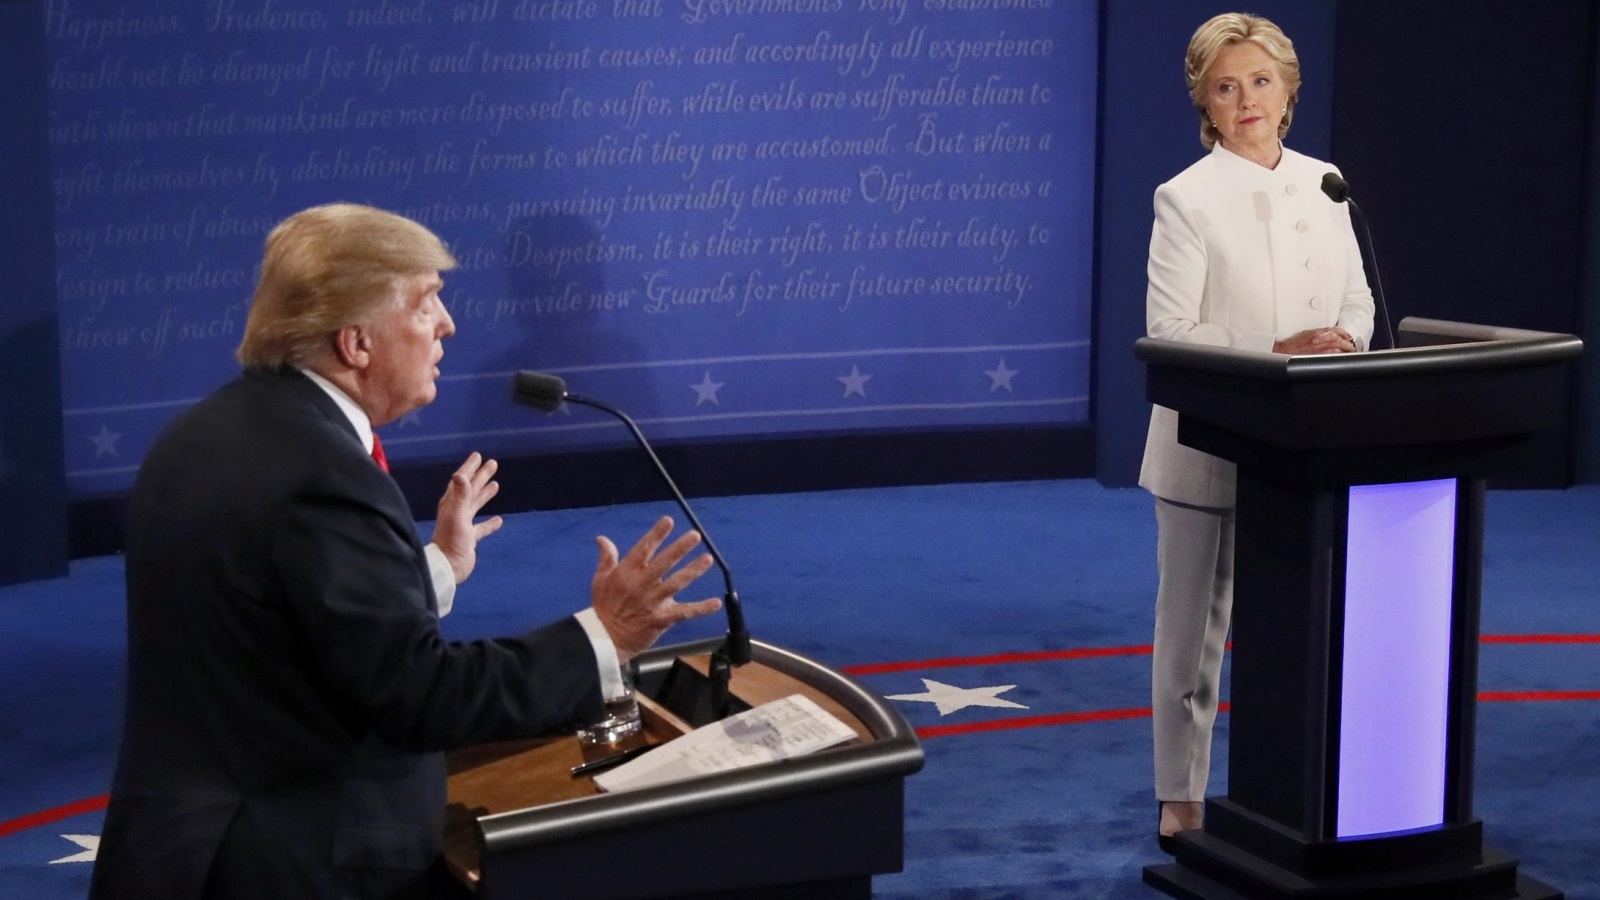 المناظرة التي جمعت بين مرشحي الرئاسة للولايات المتحدة الأميركية دونالد ترمب وهيلاري كلينتون. (رويترز)